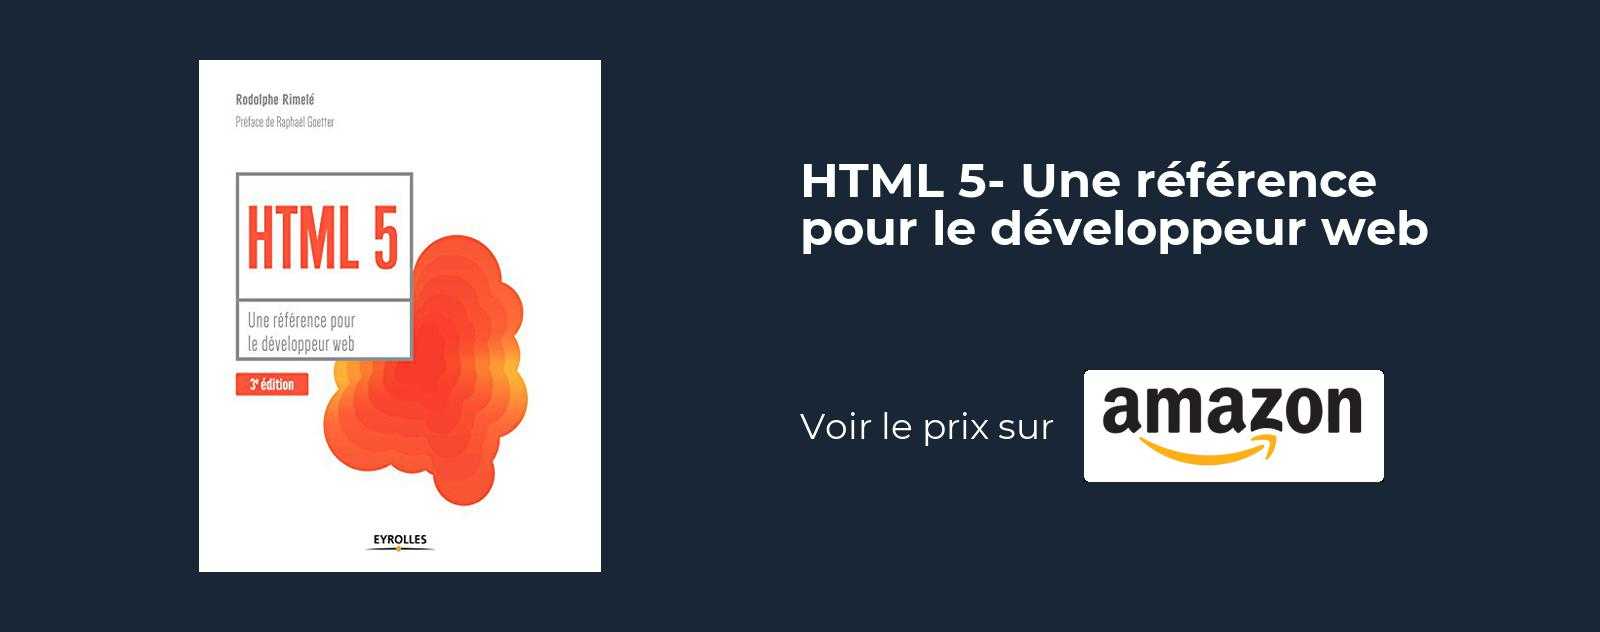 HTML 5 : Une reference pour le developpeur web